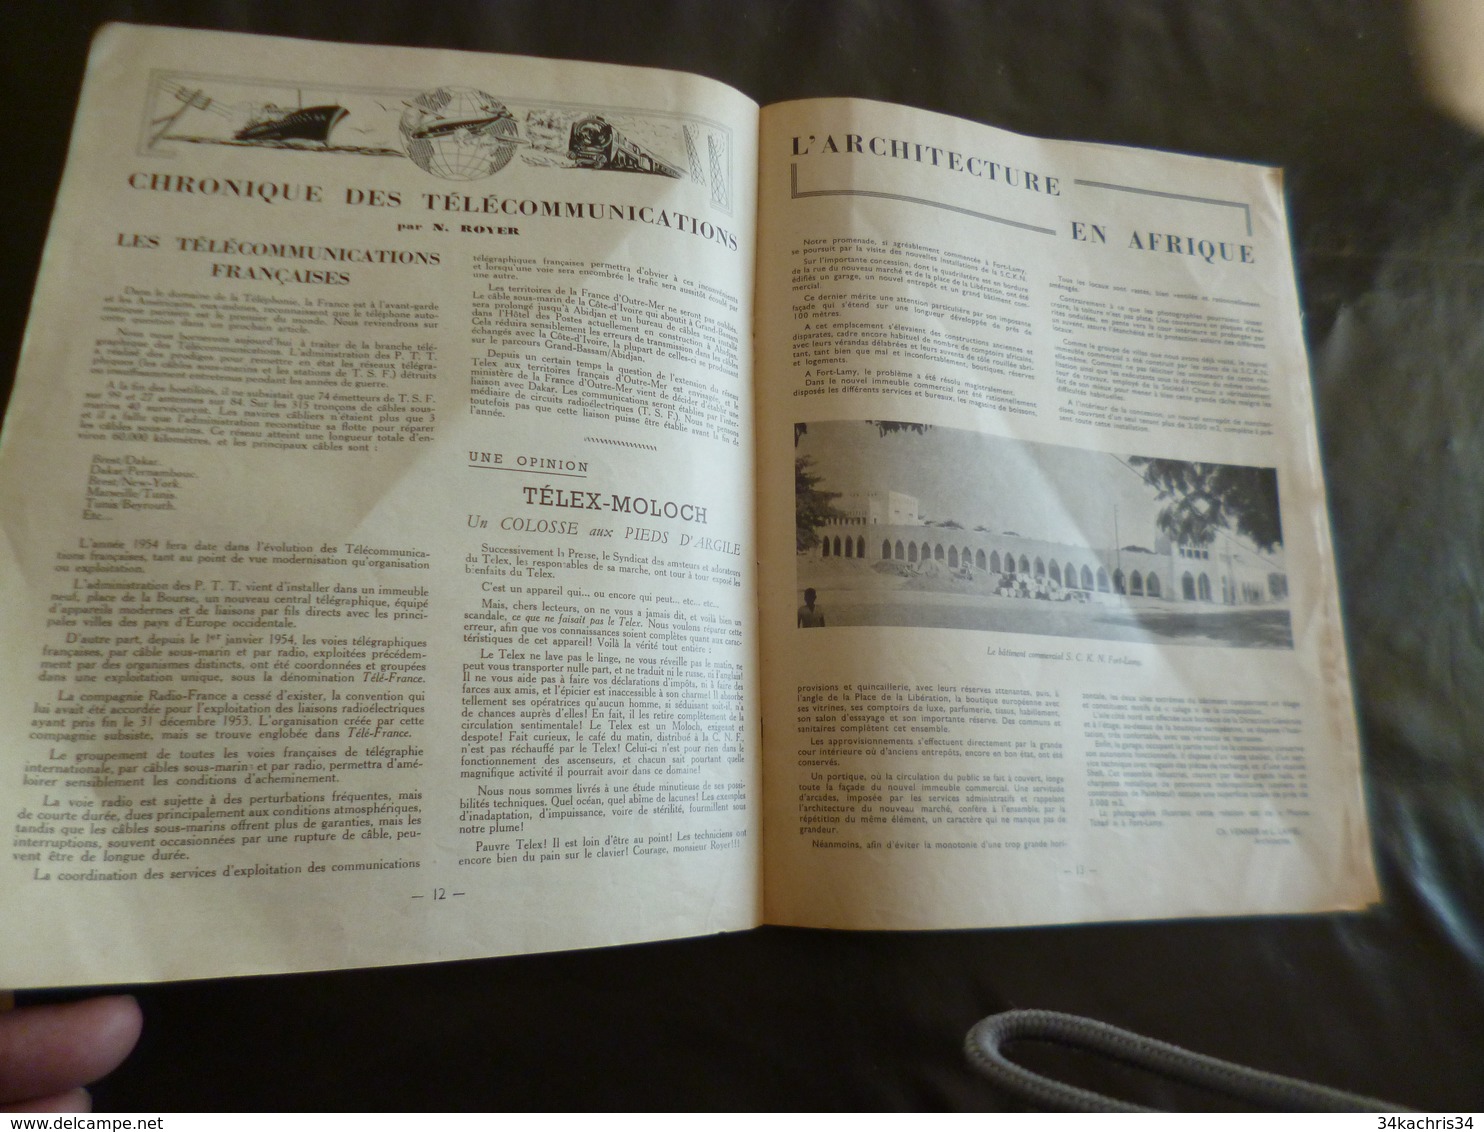 Journal Afrique Tam Tam Avril 1954 N°13 19 pages Numéro spécial Côte d'Ivoire